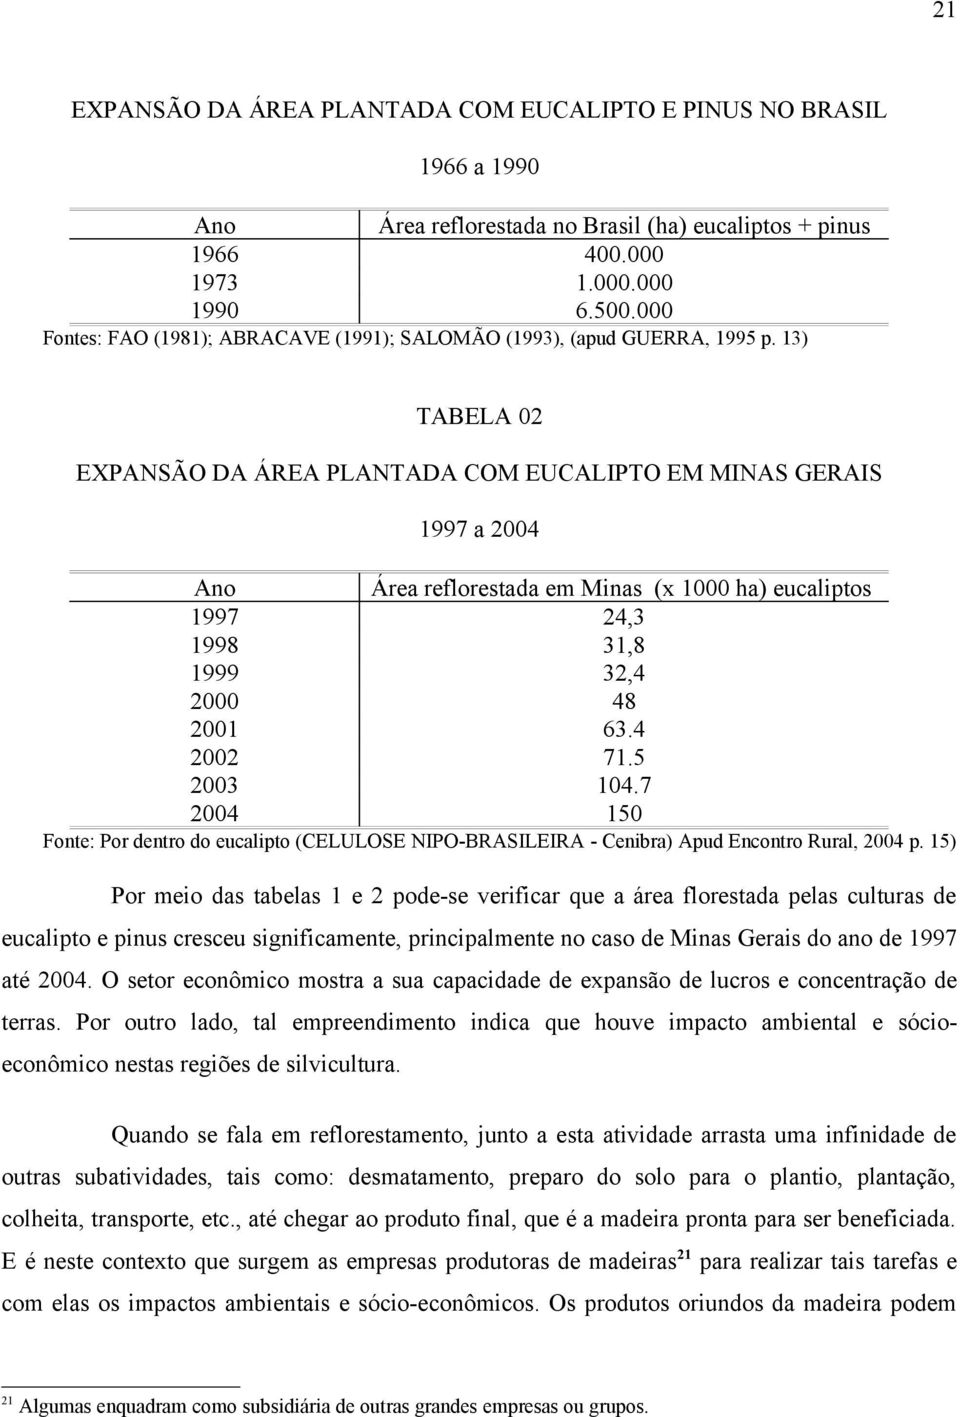 13) TABELA 02 EXPANSÃO DA ÁREA PLANTADA COM EUCALIPTO EM MINAS GERAIS 1997 a 2004 Ano 1997 1998 1999 2000 2001 2002 2003 2004 Área reflorestada em Minas (x 1000 ha) eucaliptos 24,3 31,8 32,4 48 63.